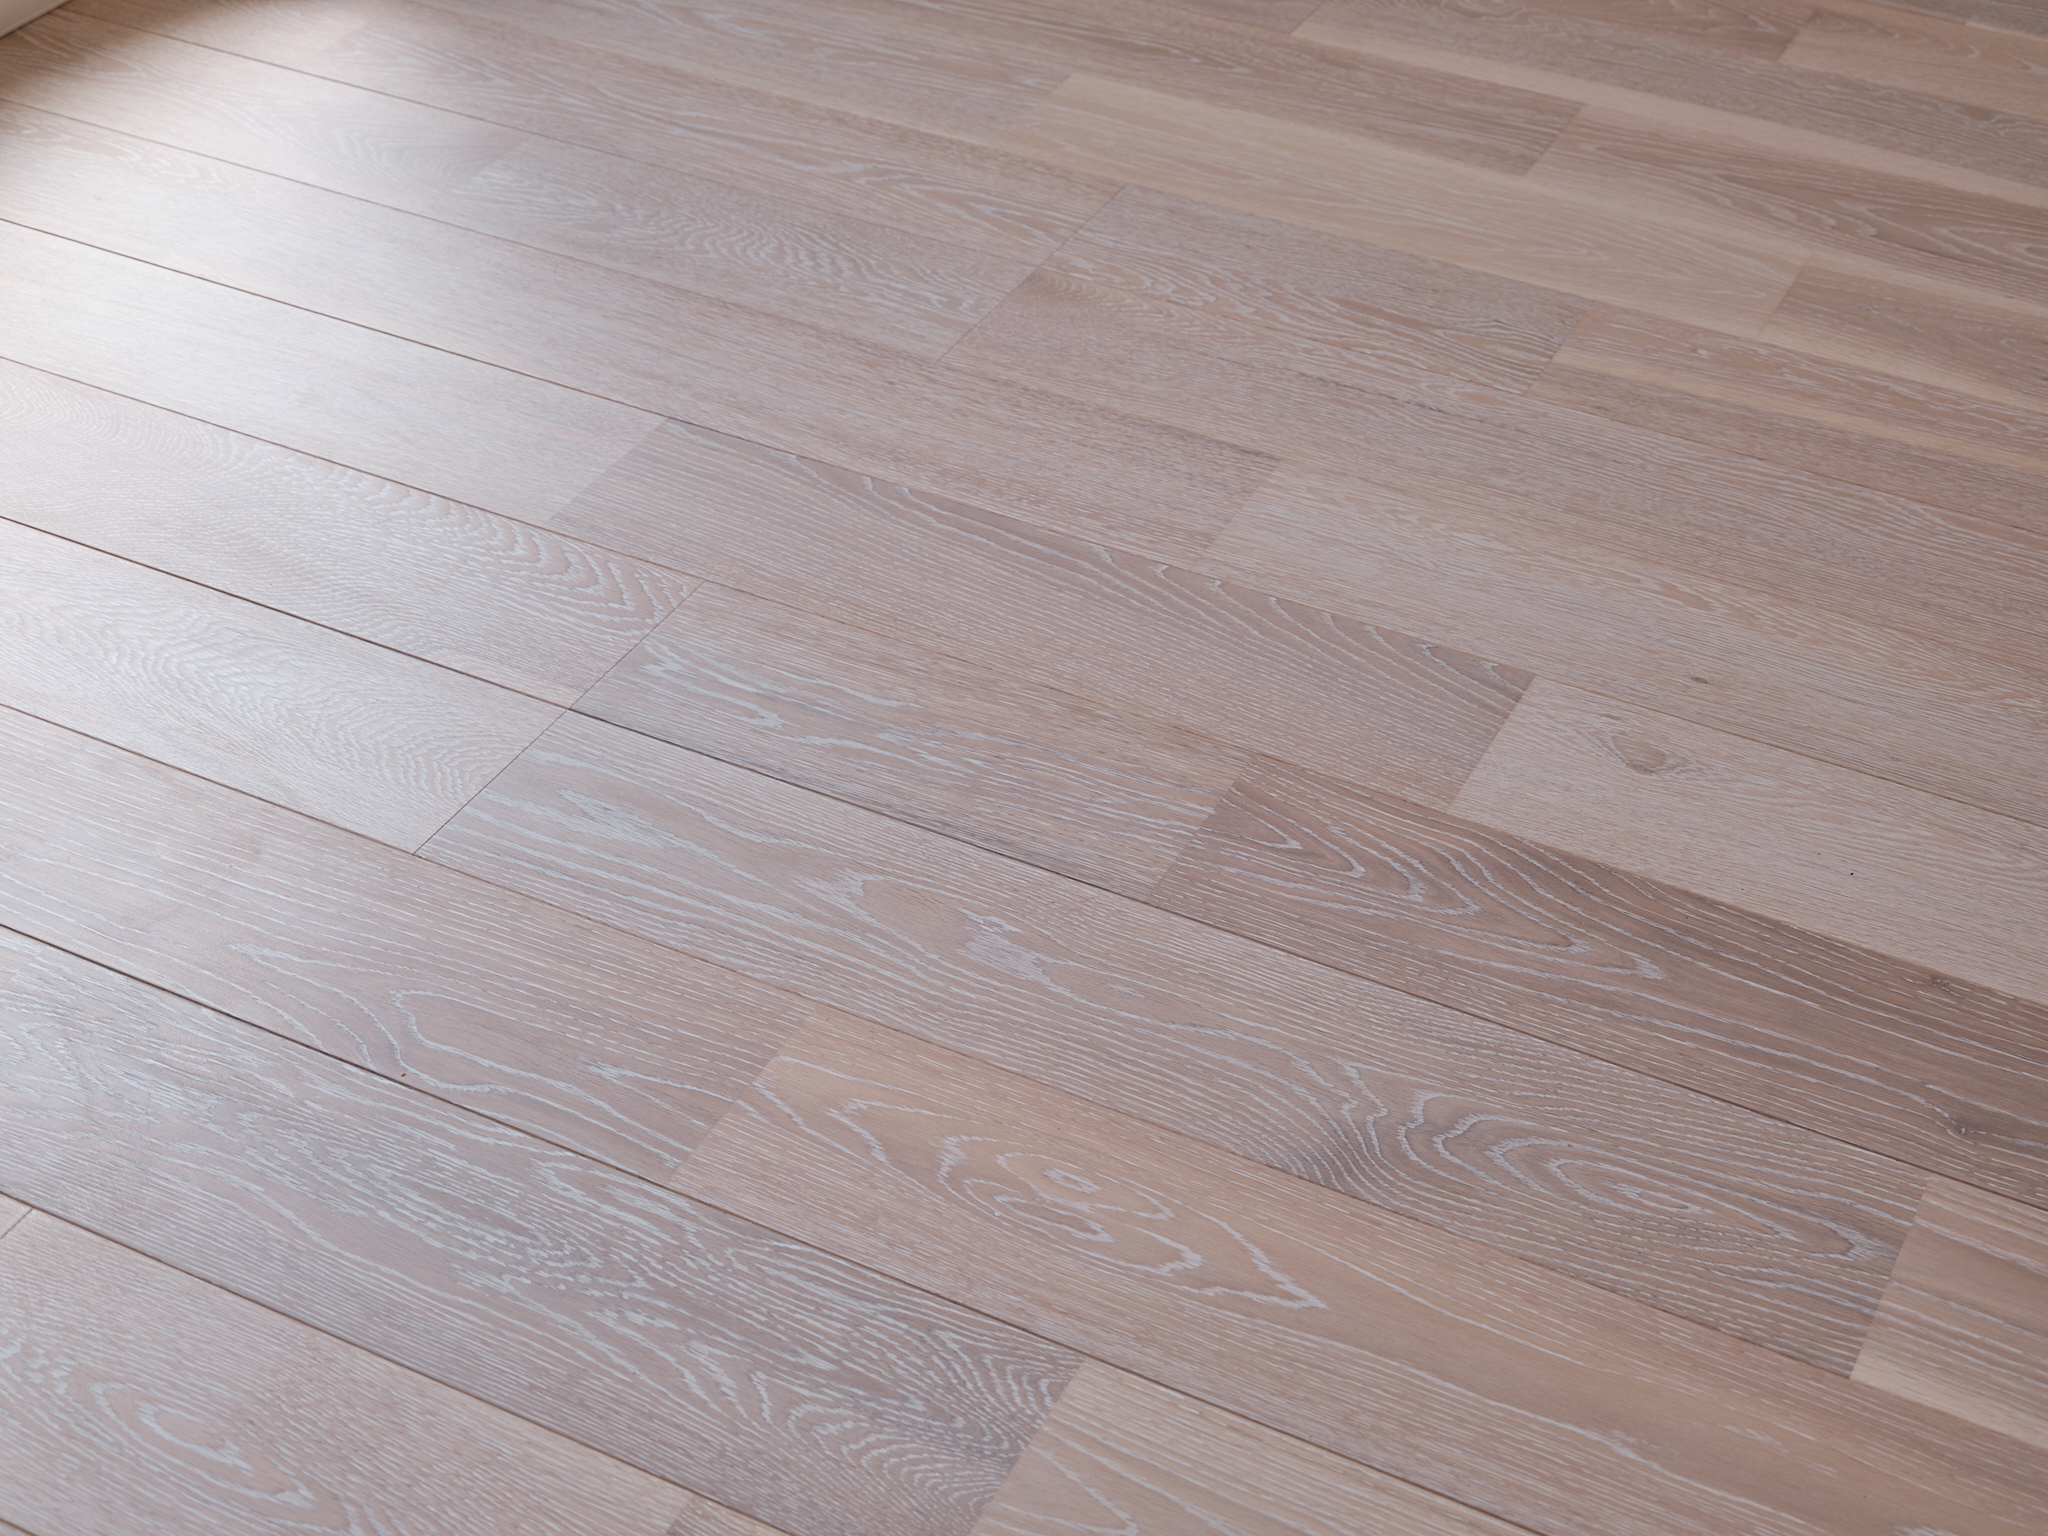 フローリングは朝日ウッドテックのライブナチュラルプレミアムを採用。裸足で歩きたくなる天然木の贅沢な床材。